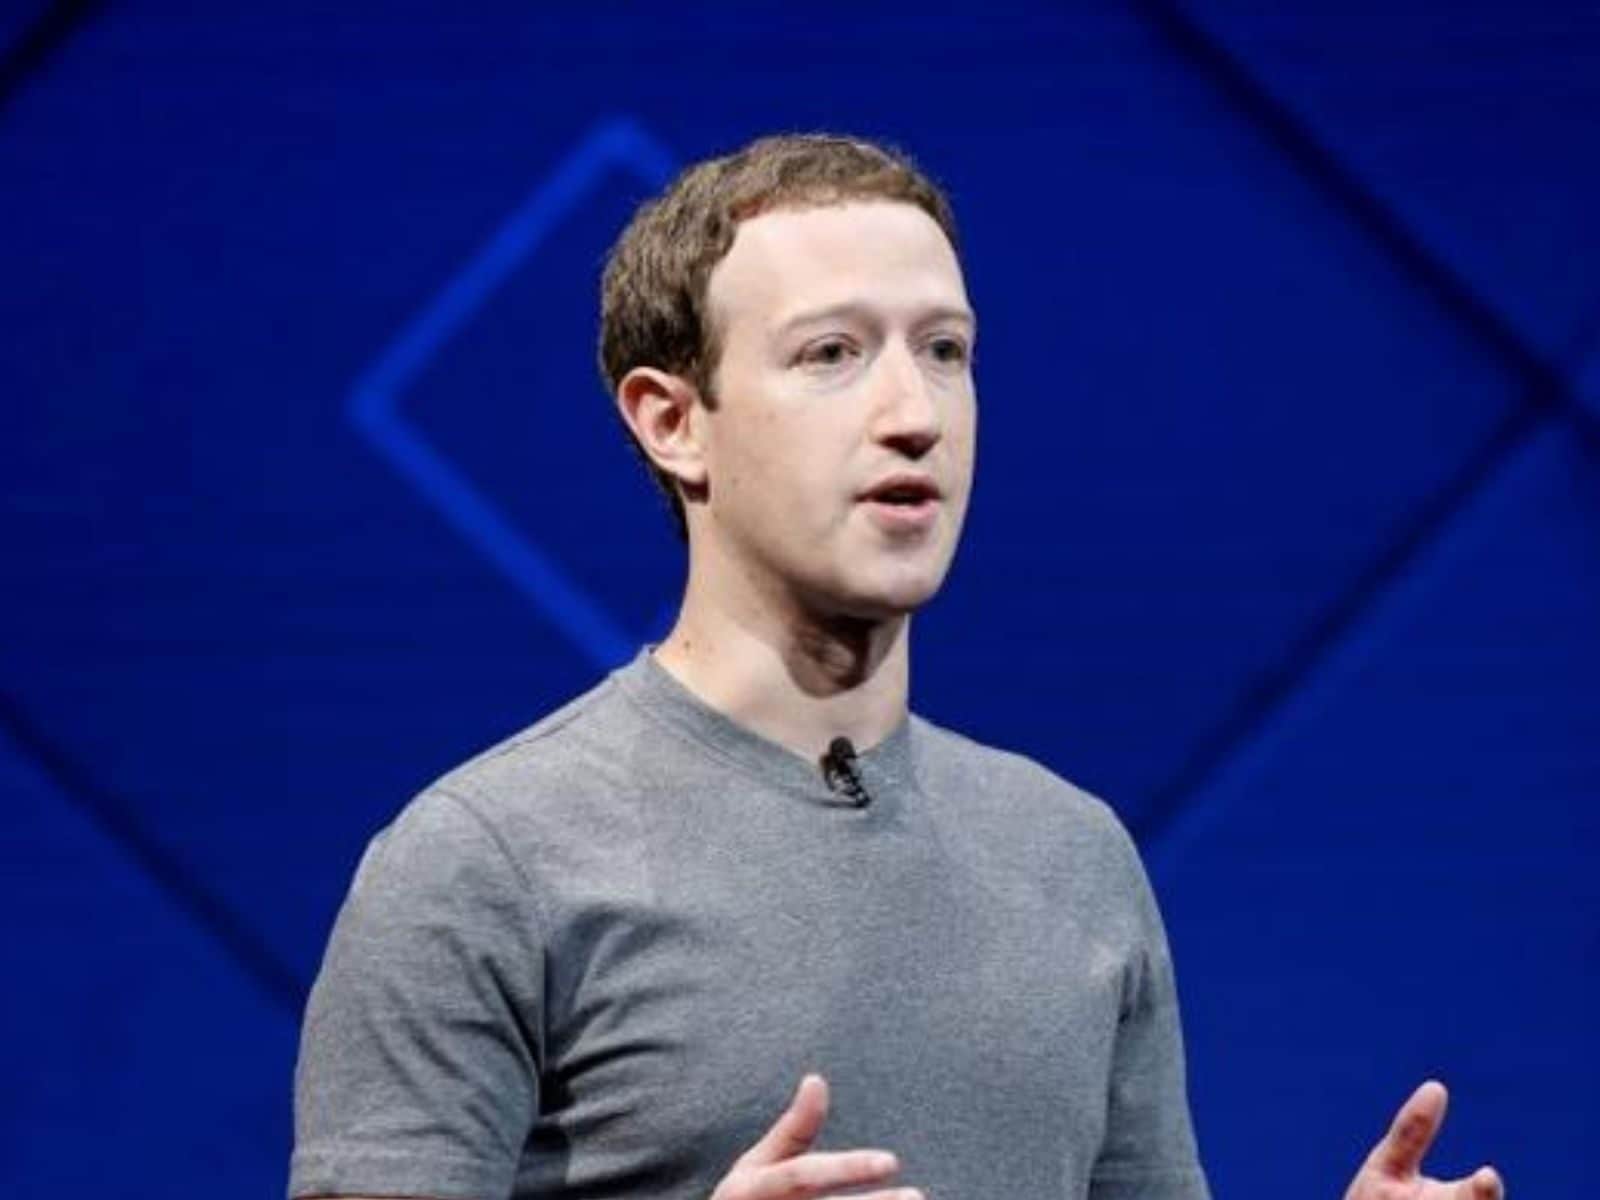 Mark Zuckerberg loses $6 billion because of major Facebook blackout